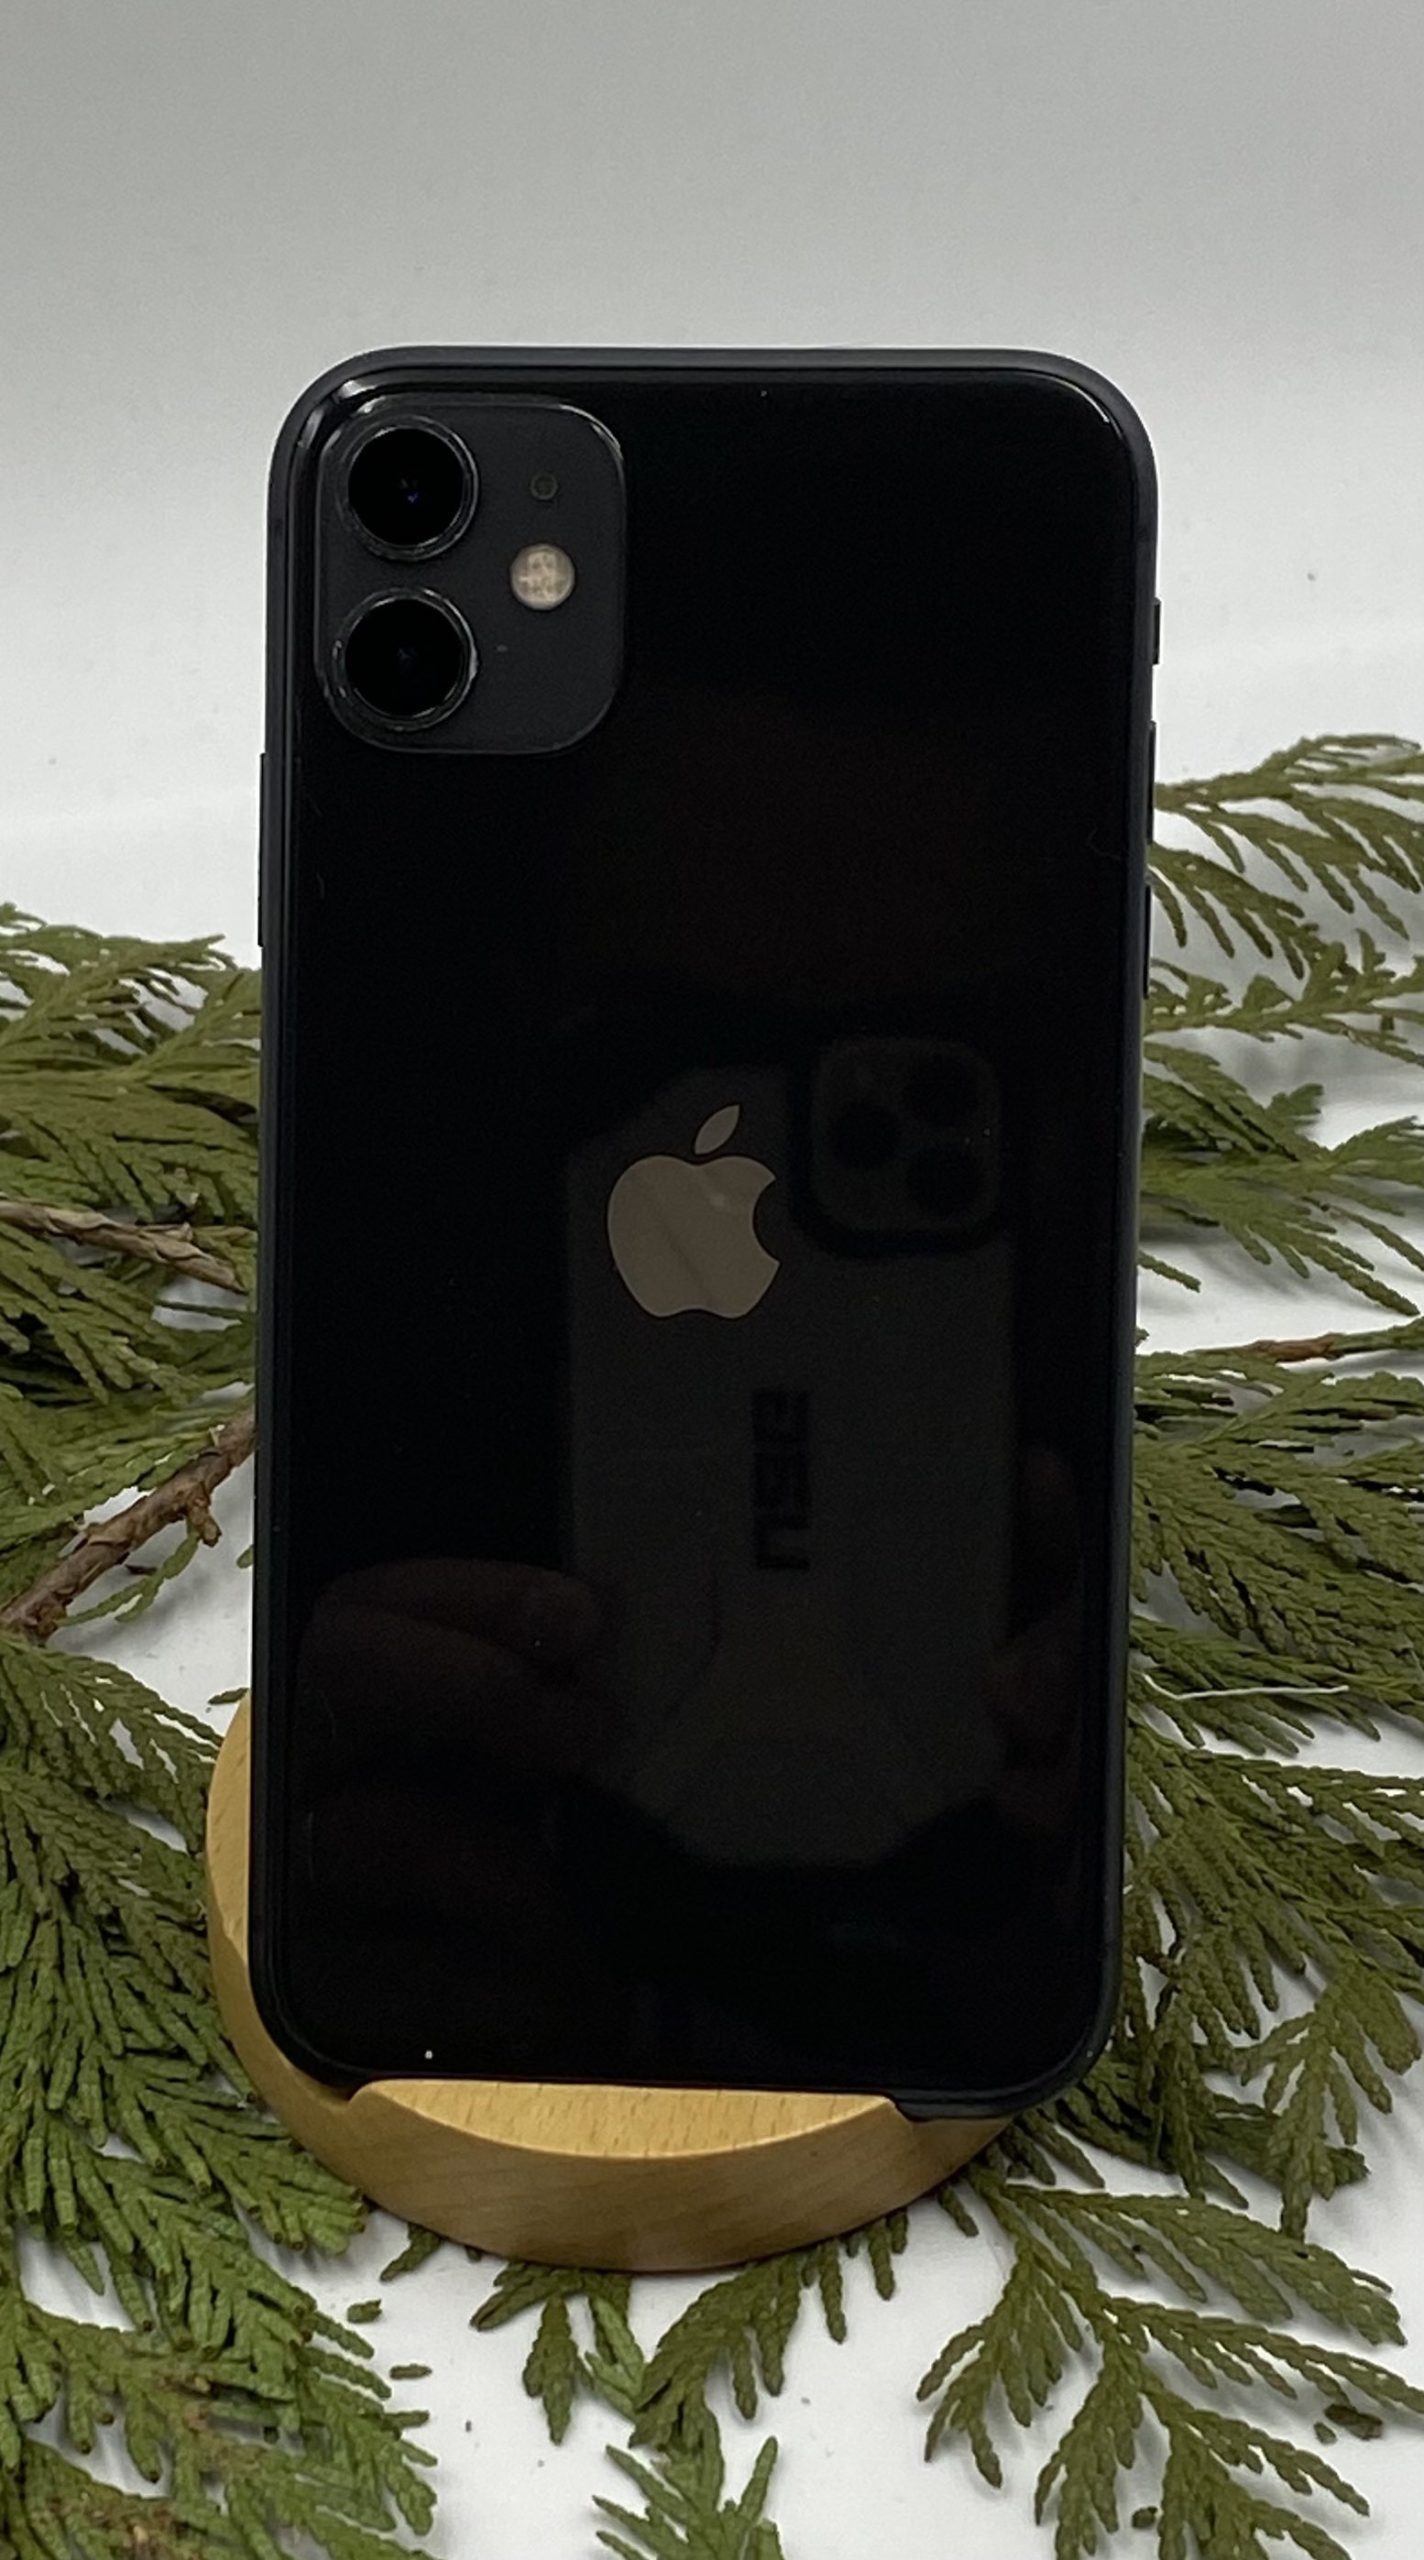 Apple iPhone 11 Black 64GB Used